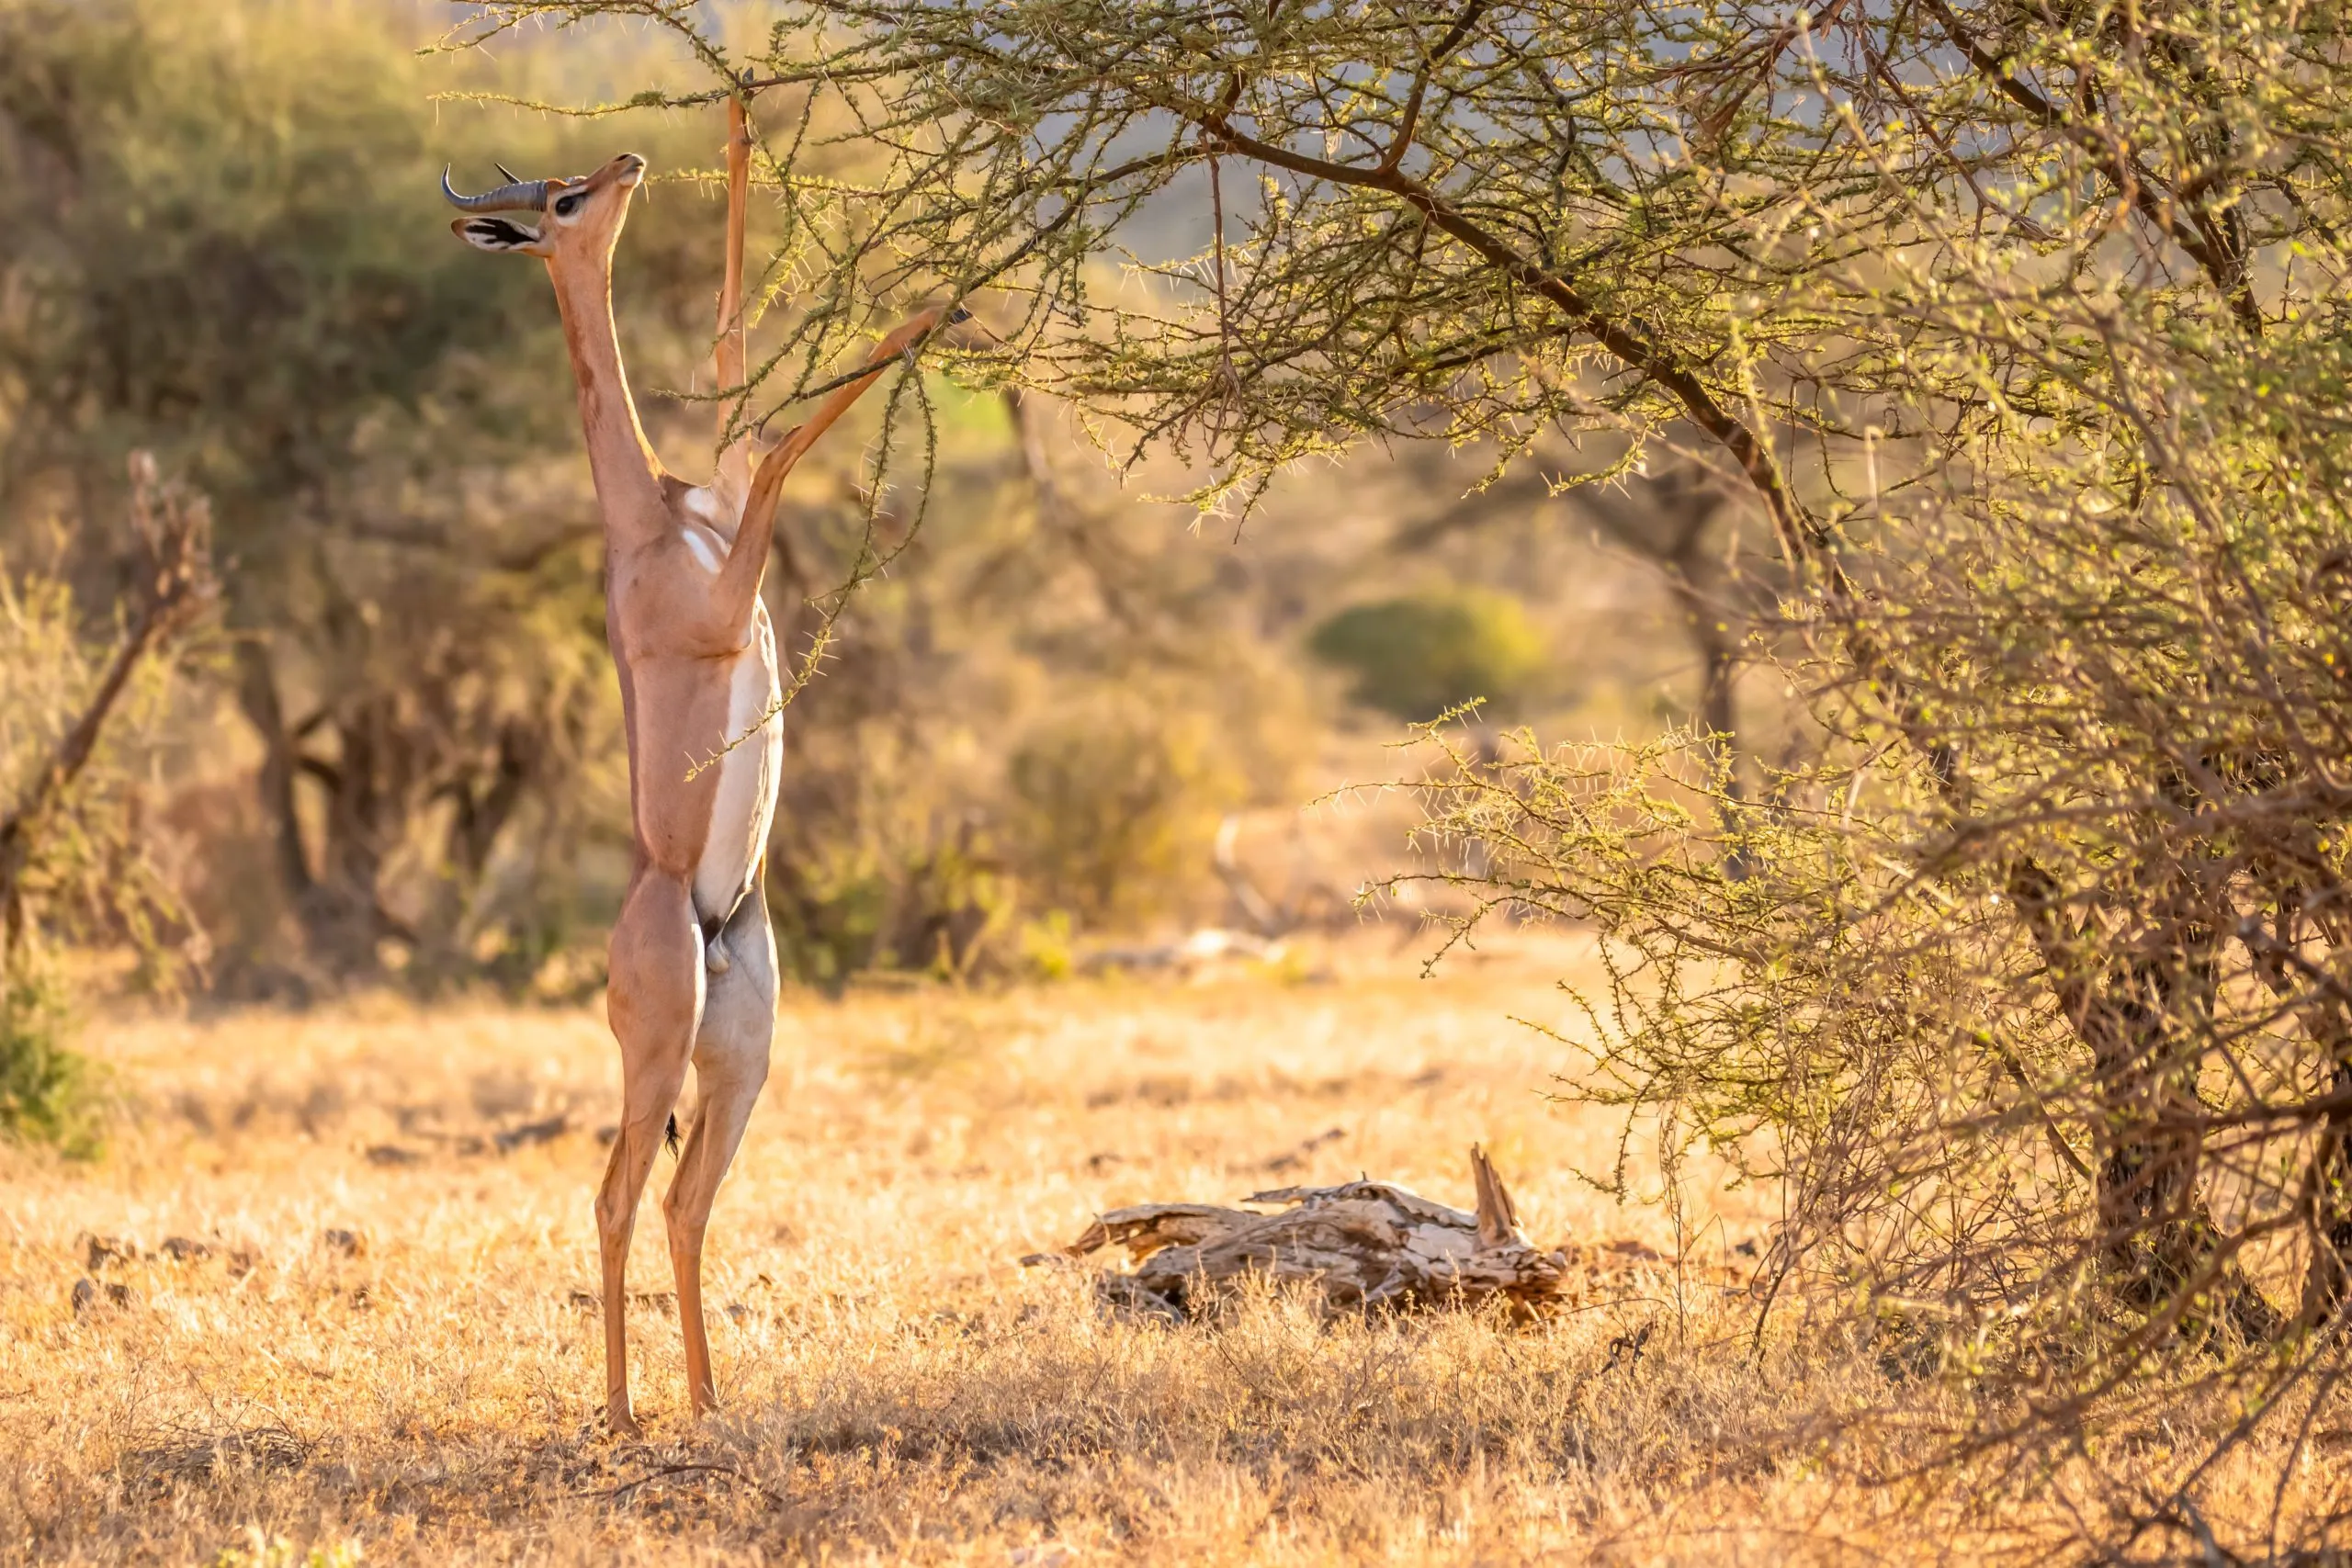 Gerenuk, Litocranius walleri myös kirahvigazelli,pitkäkaulainen antilooppi, pitkä hoikka kaula ja raajat,seisoo takajalkojen varassa lehtien syönnin aikana. Illan afrikkalaiset värit. Samburun kansallispuisto, Kenia